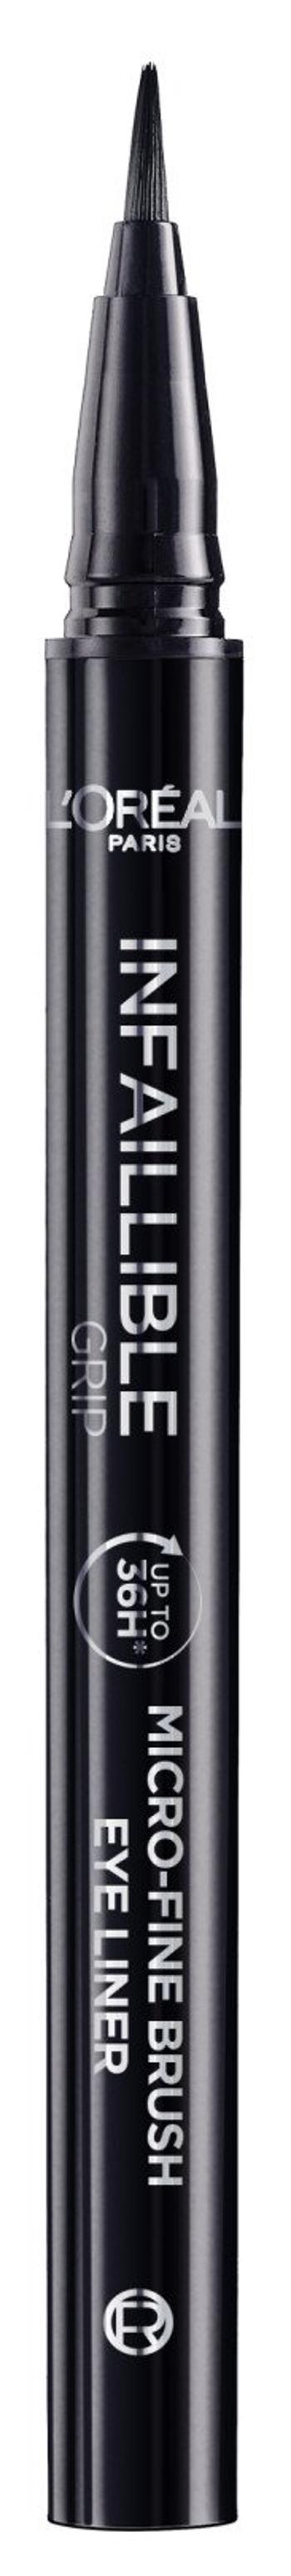 L'Oréal Paris Infaillible Grip 36h Micro-Fine liner 01 Obsidian black čierna očná linka 0.4 g